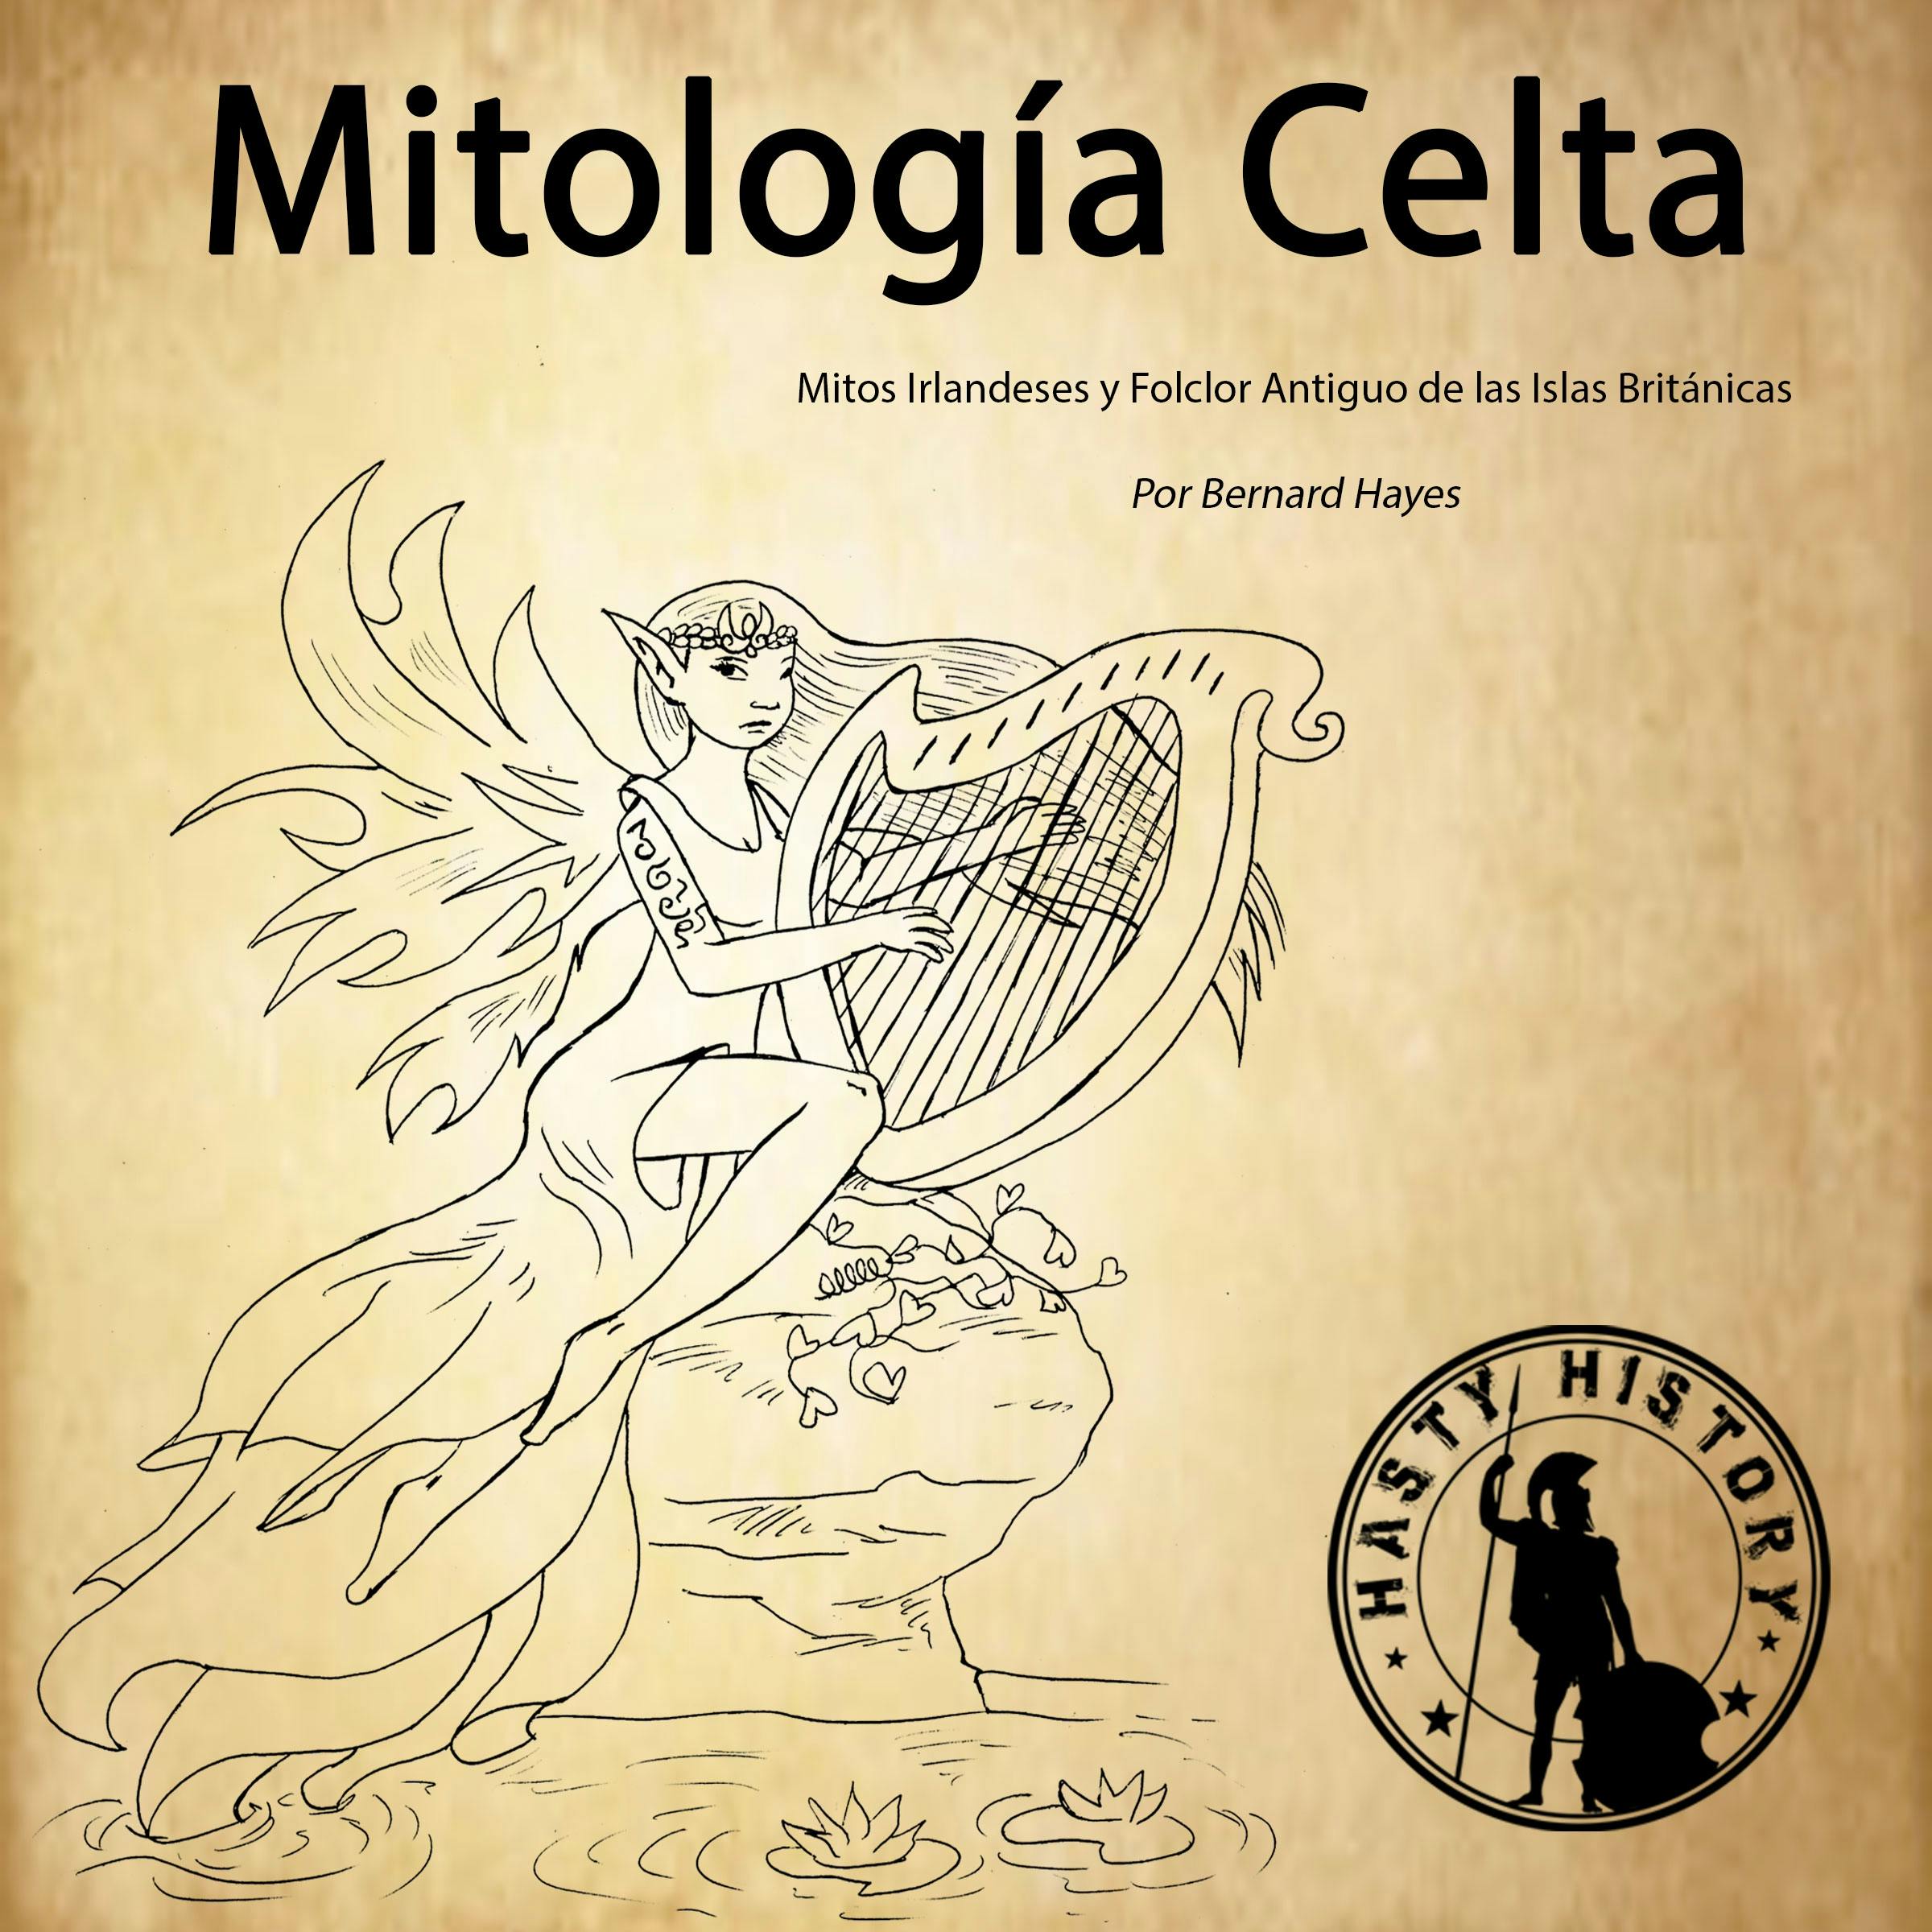 Mitología Celta: Mitos Irlandeses y Folklore Antiguo de las Islas Británicas [Irish Myths and Ancient Folklore of the British Isles] - undefined